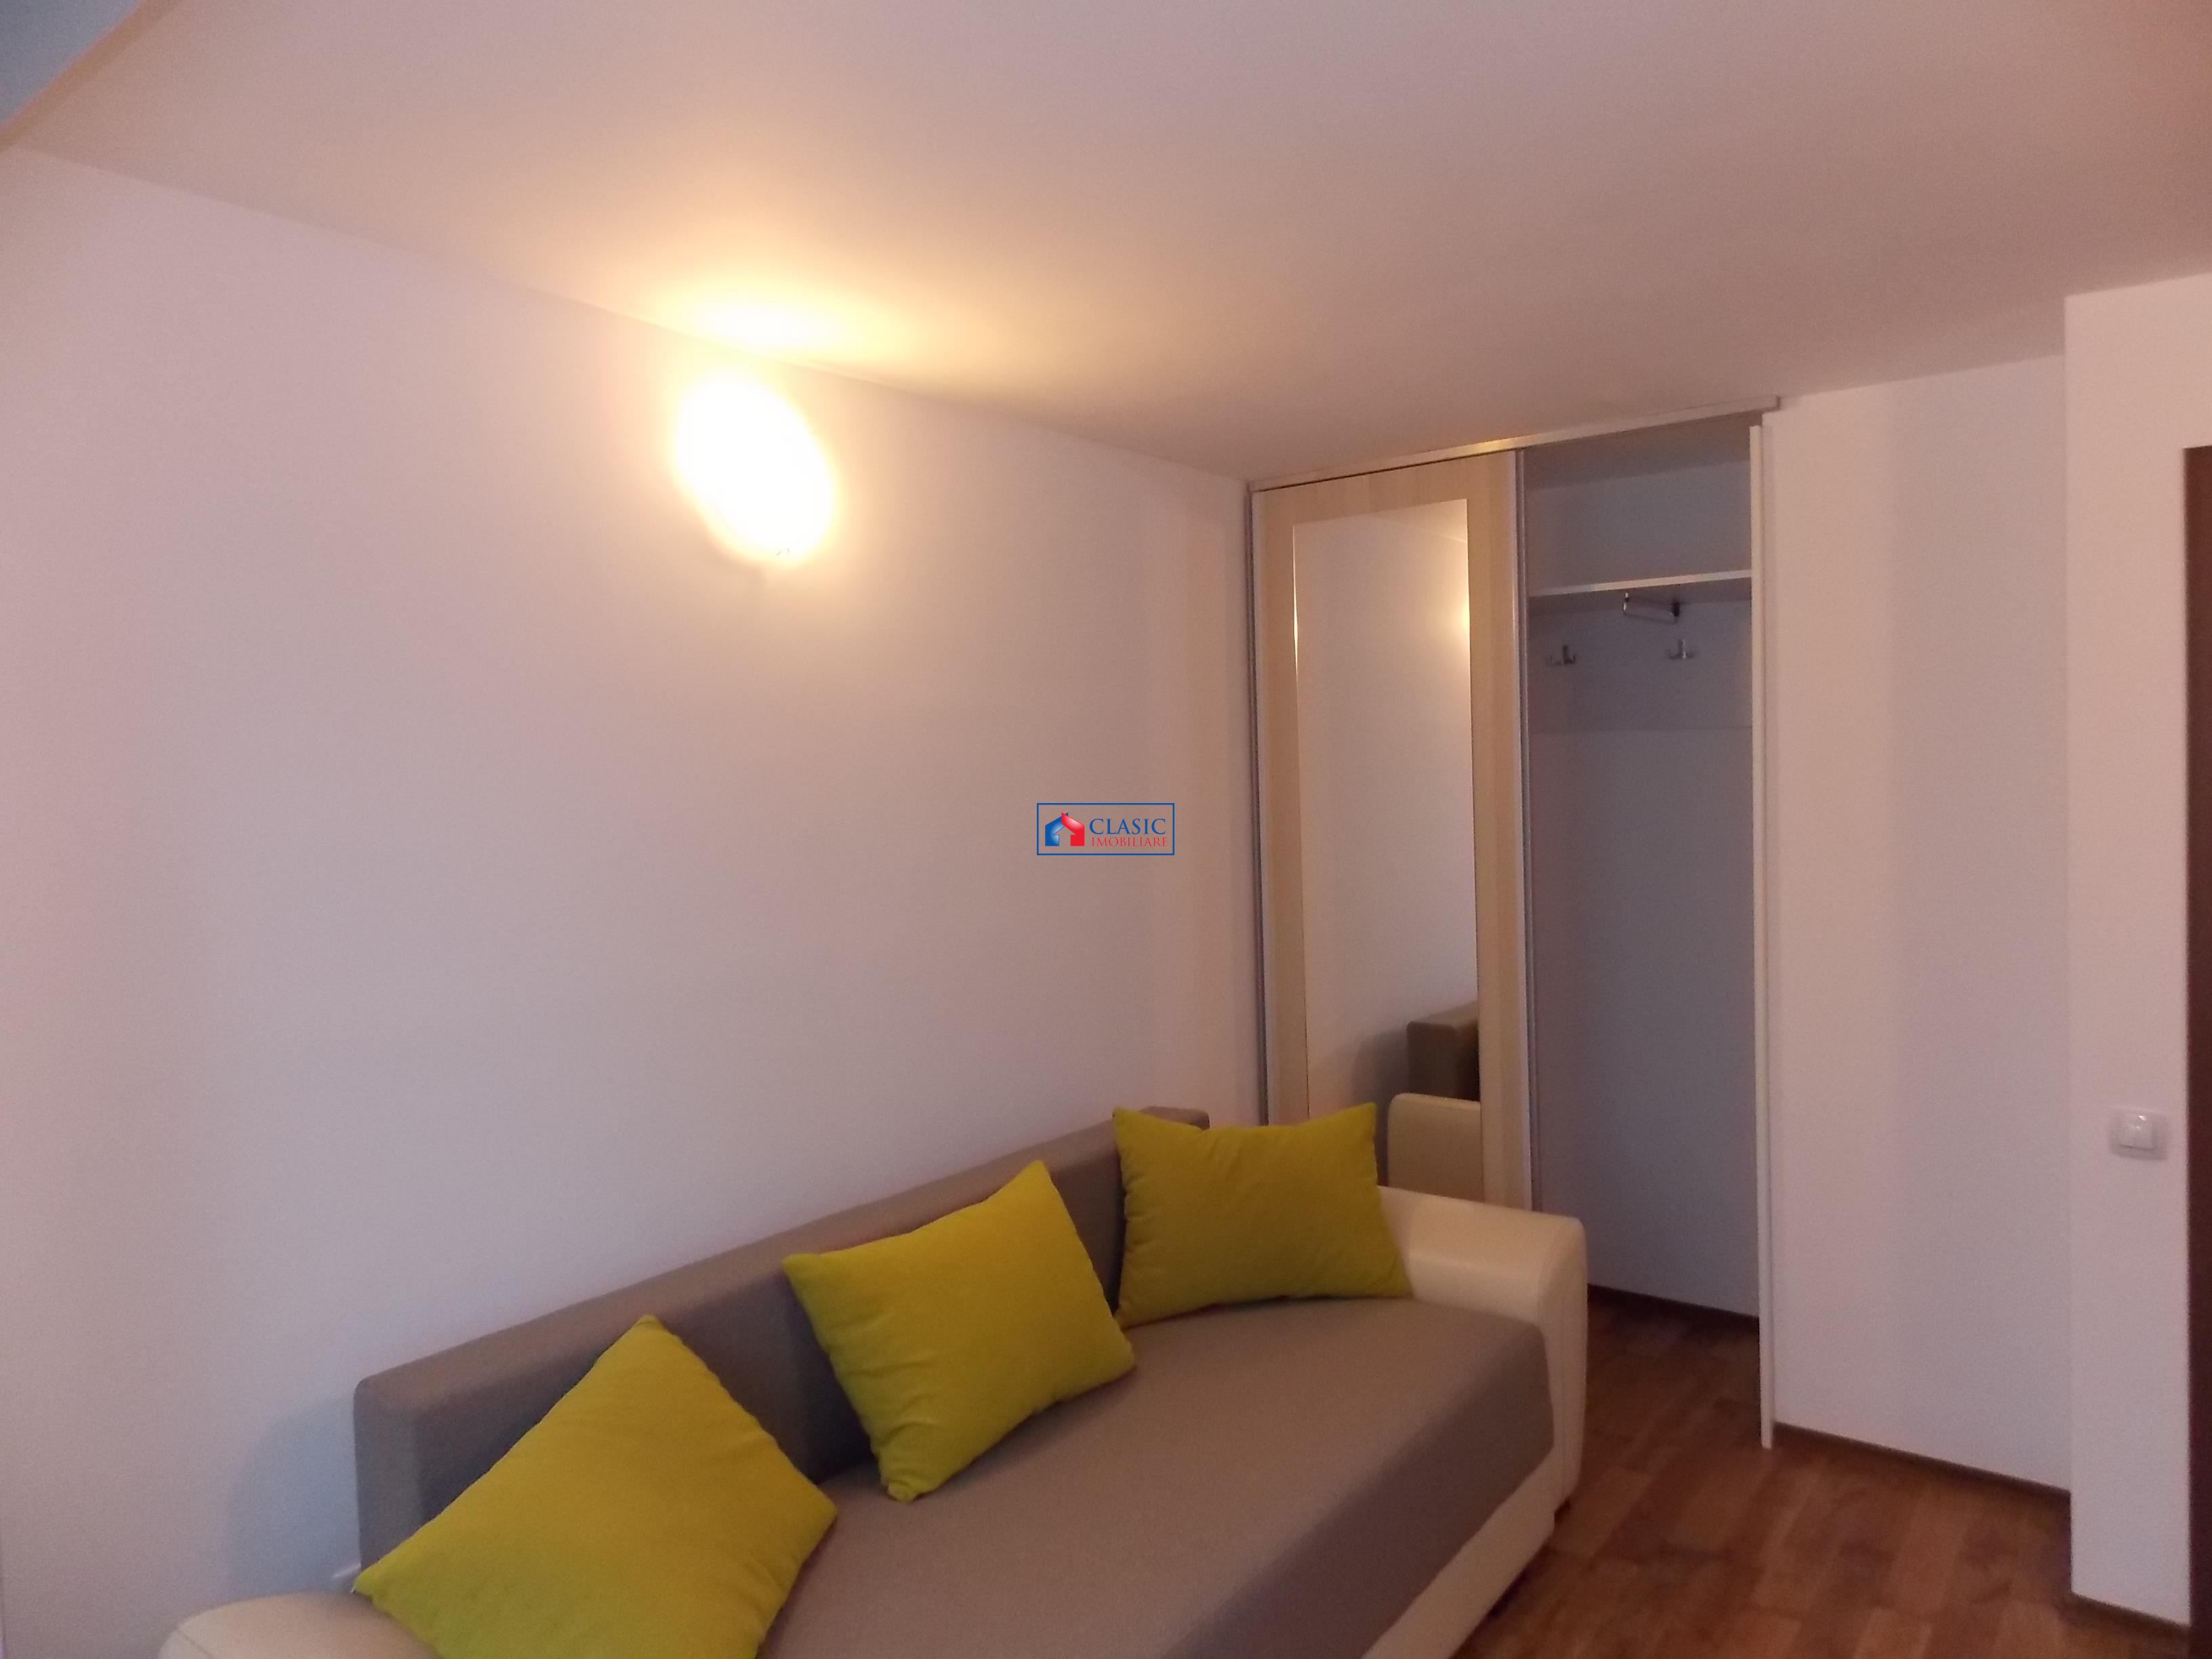 Inchiriere apartament 4 camere modern bloc nou in Zorilor  zona UMF, Cluj Napoca